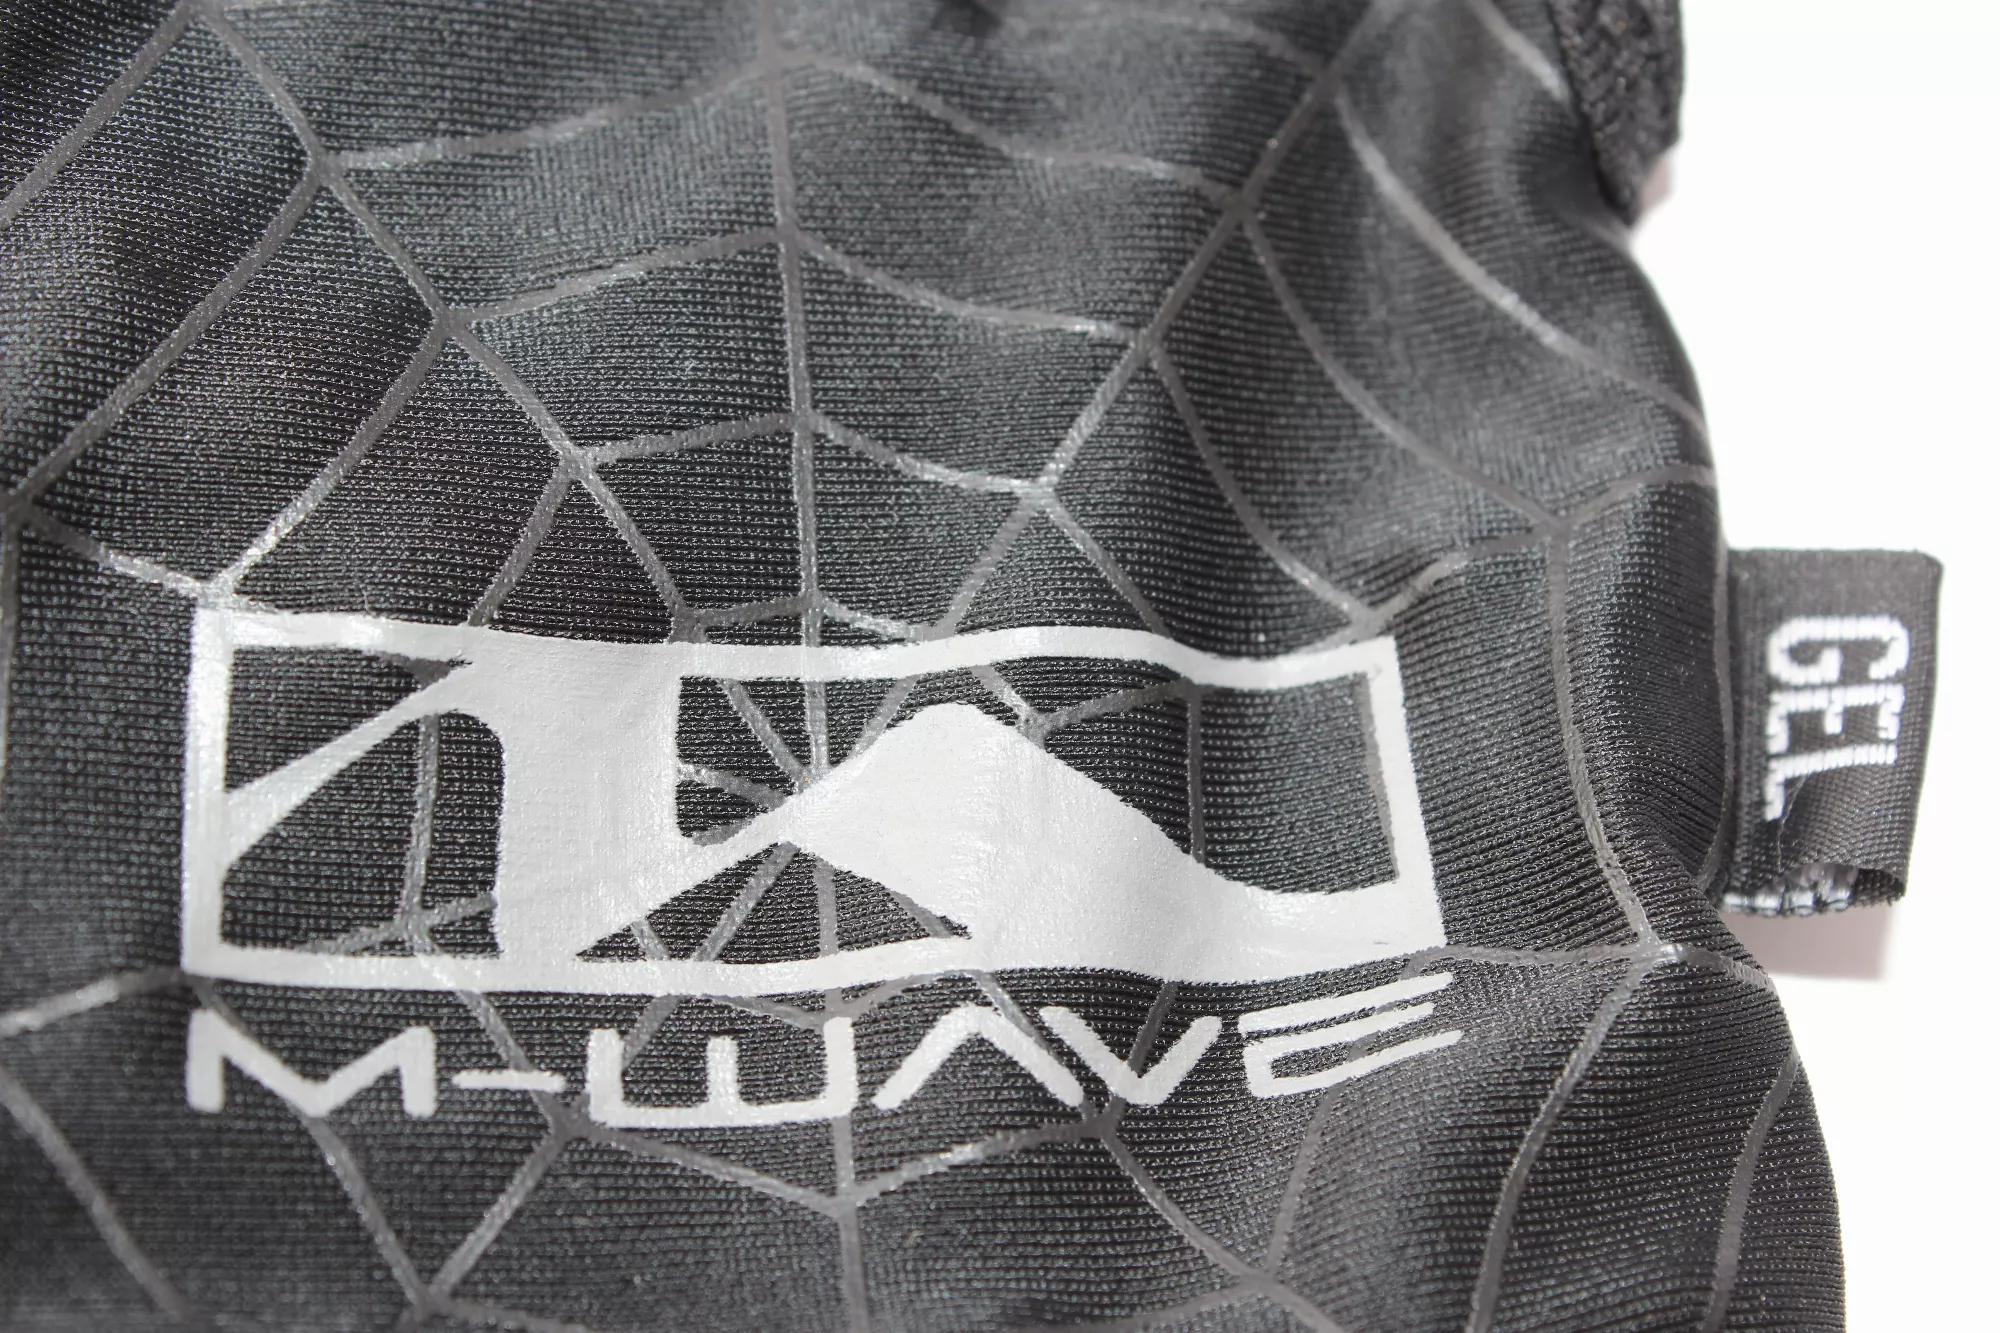 BMX Handschuhe KHE M-WAVE XL